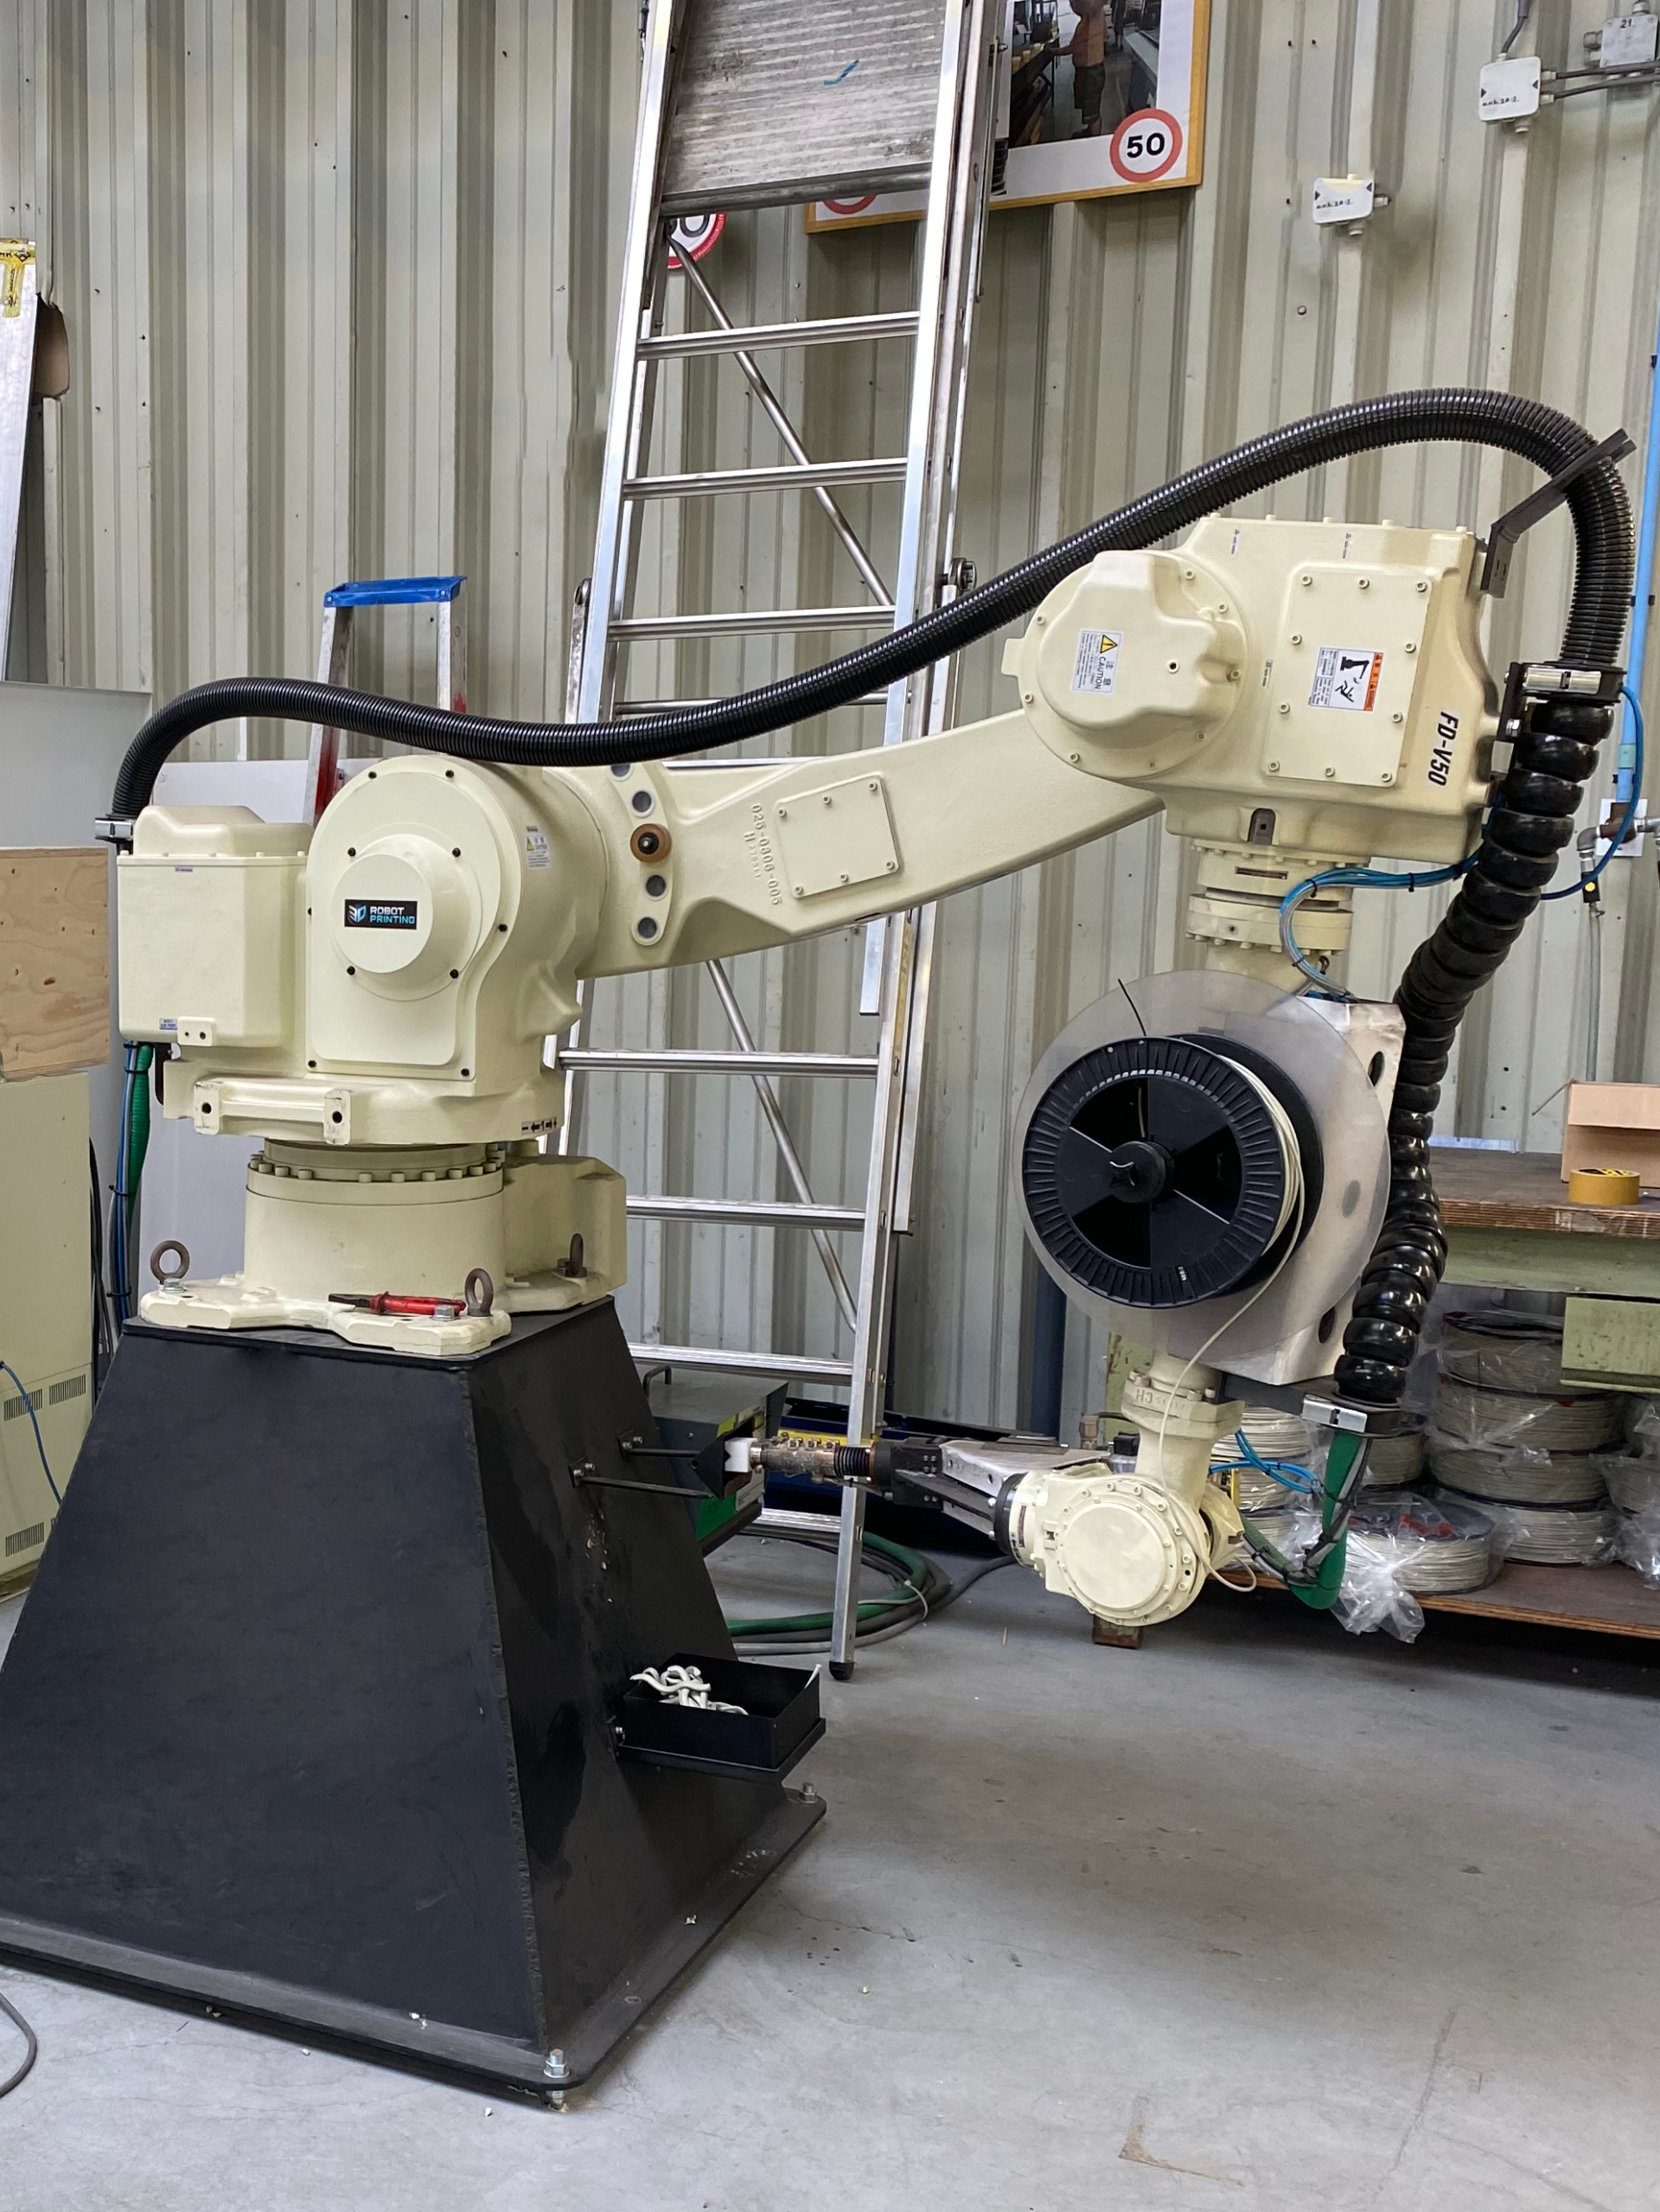 Robotic arm for welding